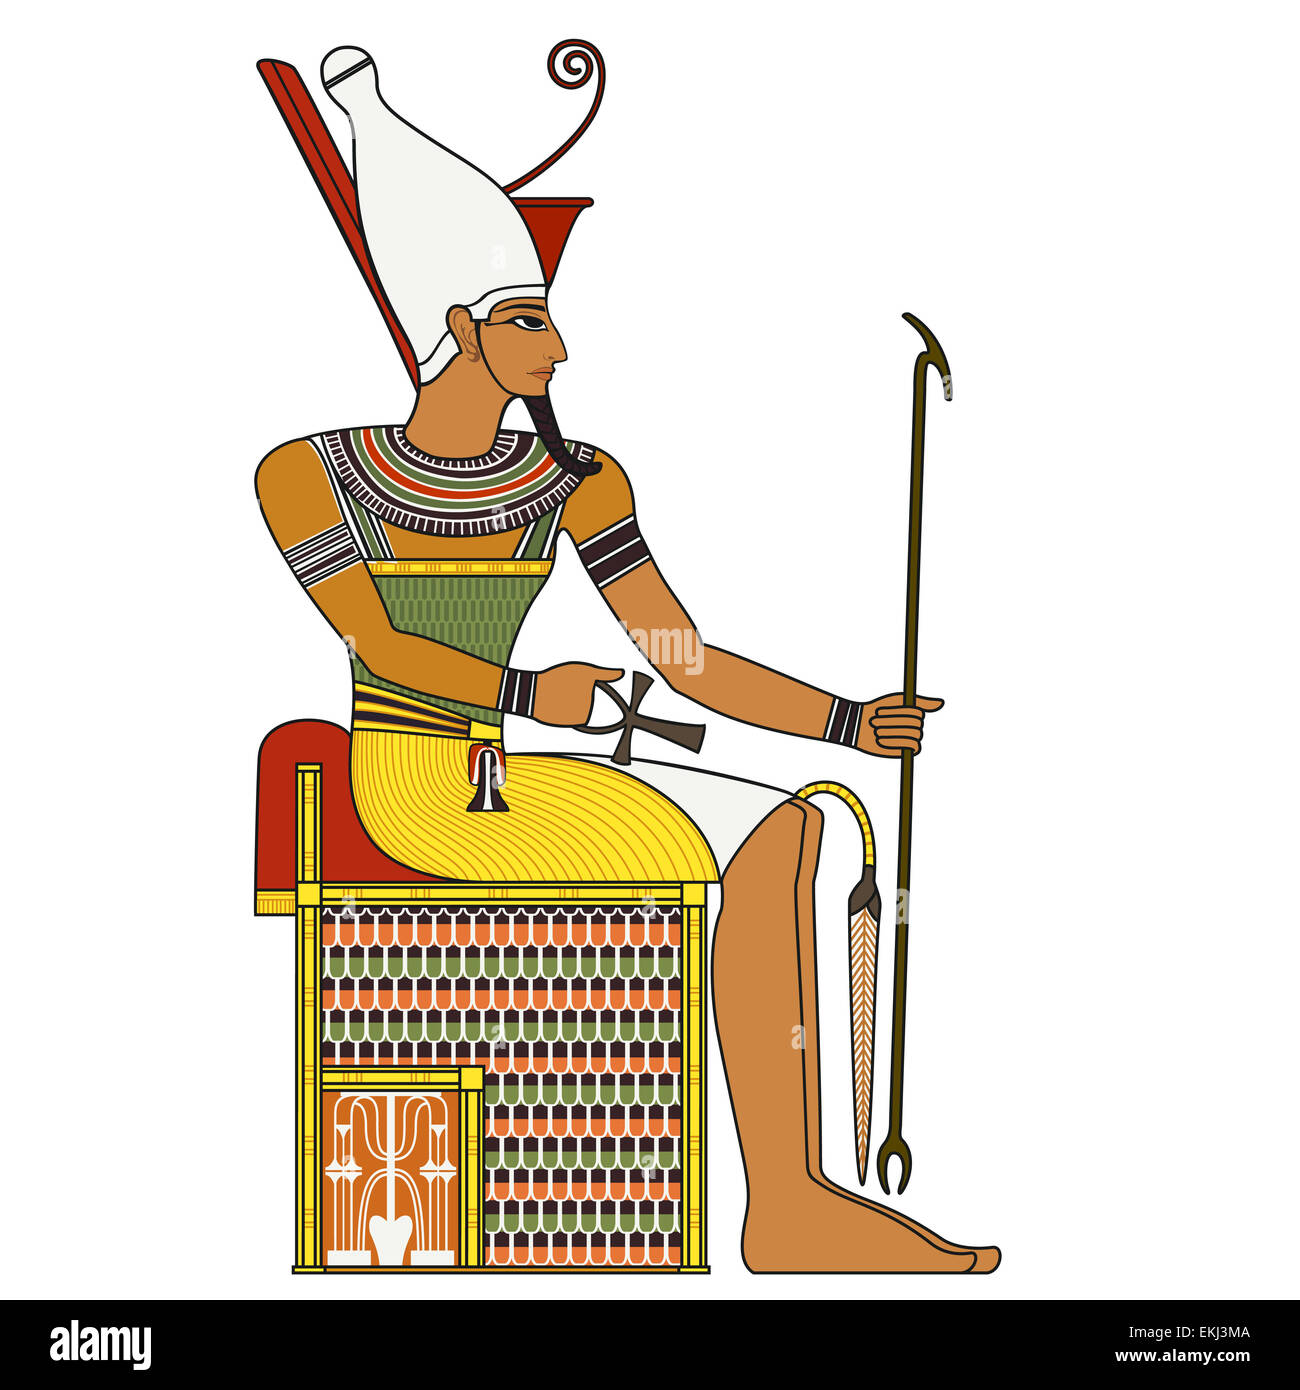 Pharaoh,isolated figure of ancient egypt pharaoh Stock Photo